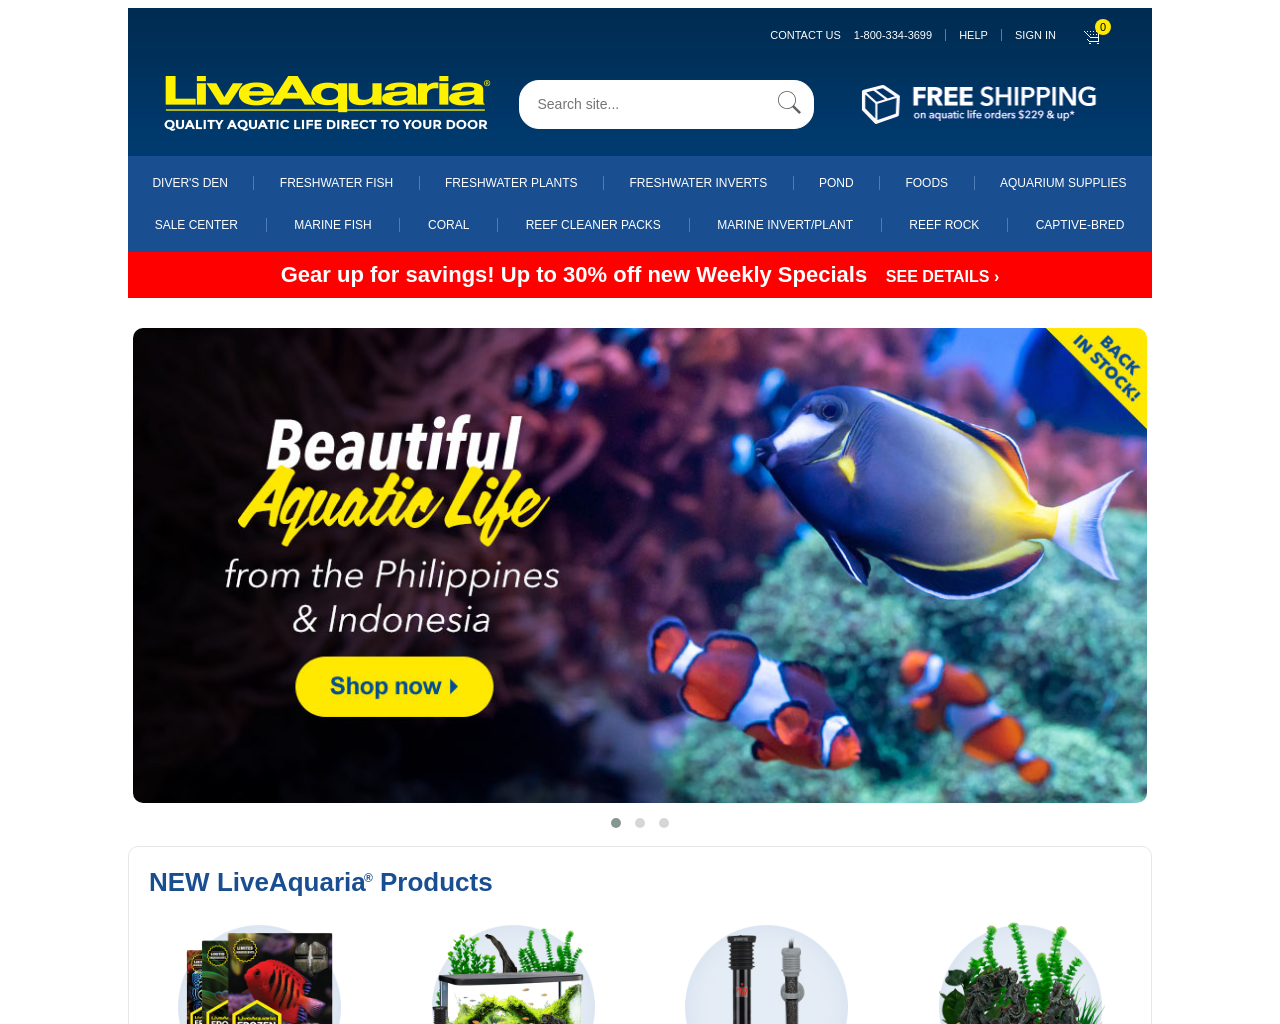 liveaquaria.com